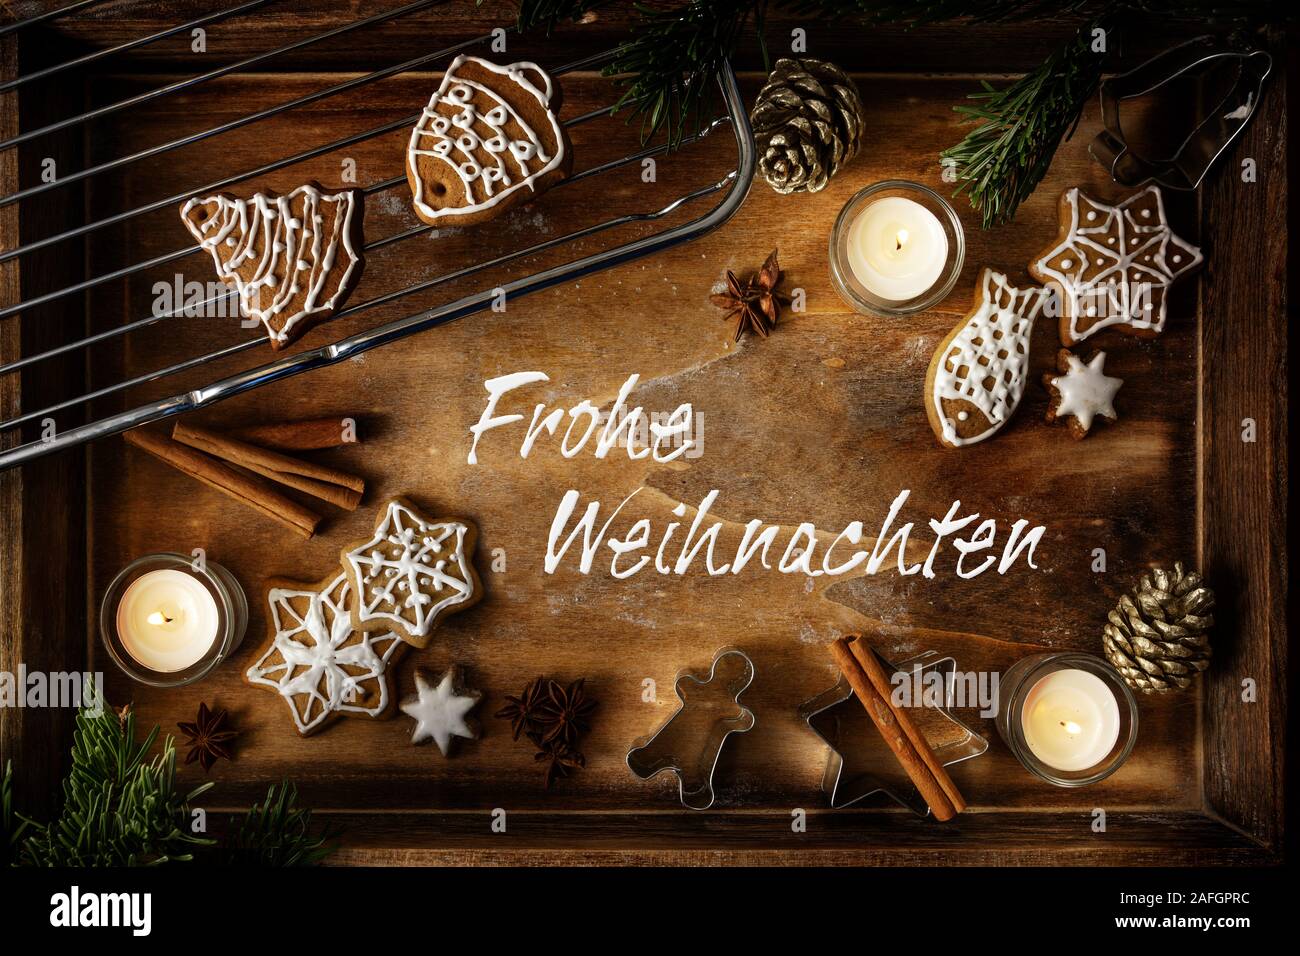 D'épices, de bougies et d'un emporte-pièce sur un plateau de bois foncé, texte allemand Frohe Weihnachten, sens joyeux Noël, télévision lay, high angle v Banque D'Images